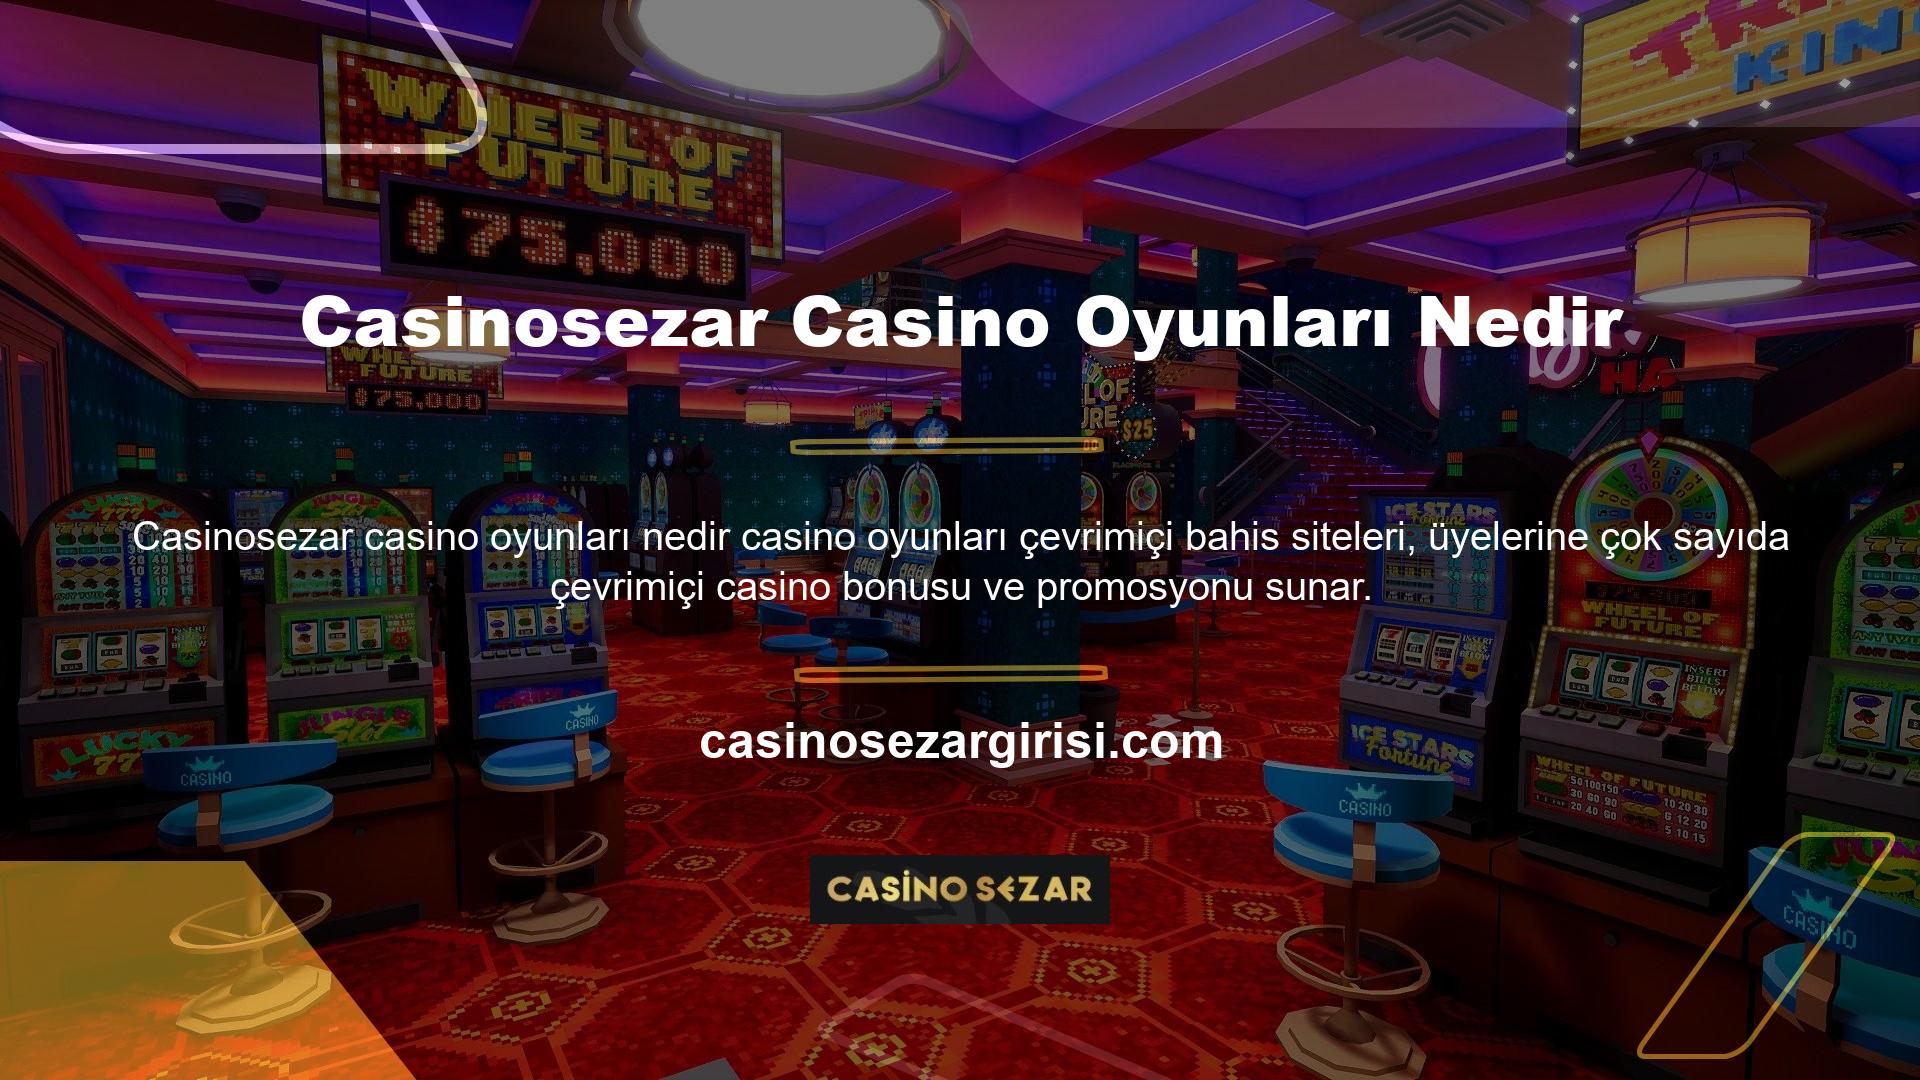 Site ayrıca casino casino endüstrisinde 30'dan fazla altyapı sağlayıcısıyla birlikte çalışır, bu nedenle çok iyi bir klasik ve çeşitli oyun seçkisi sunar